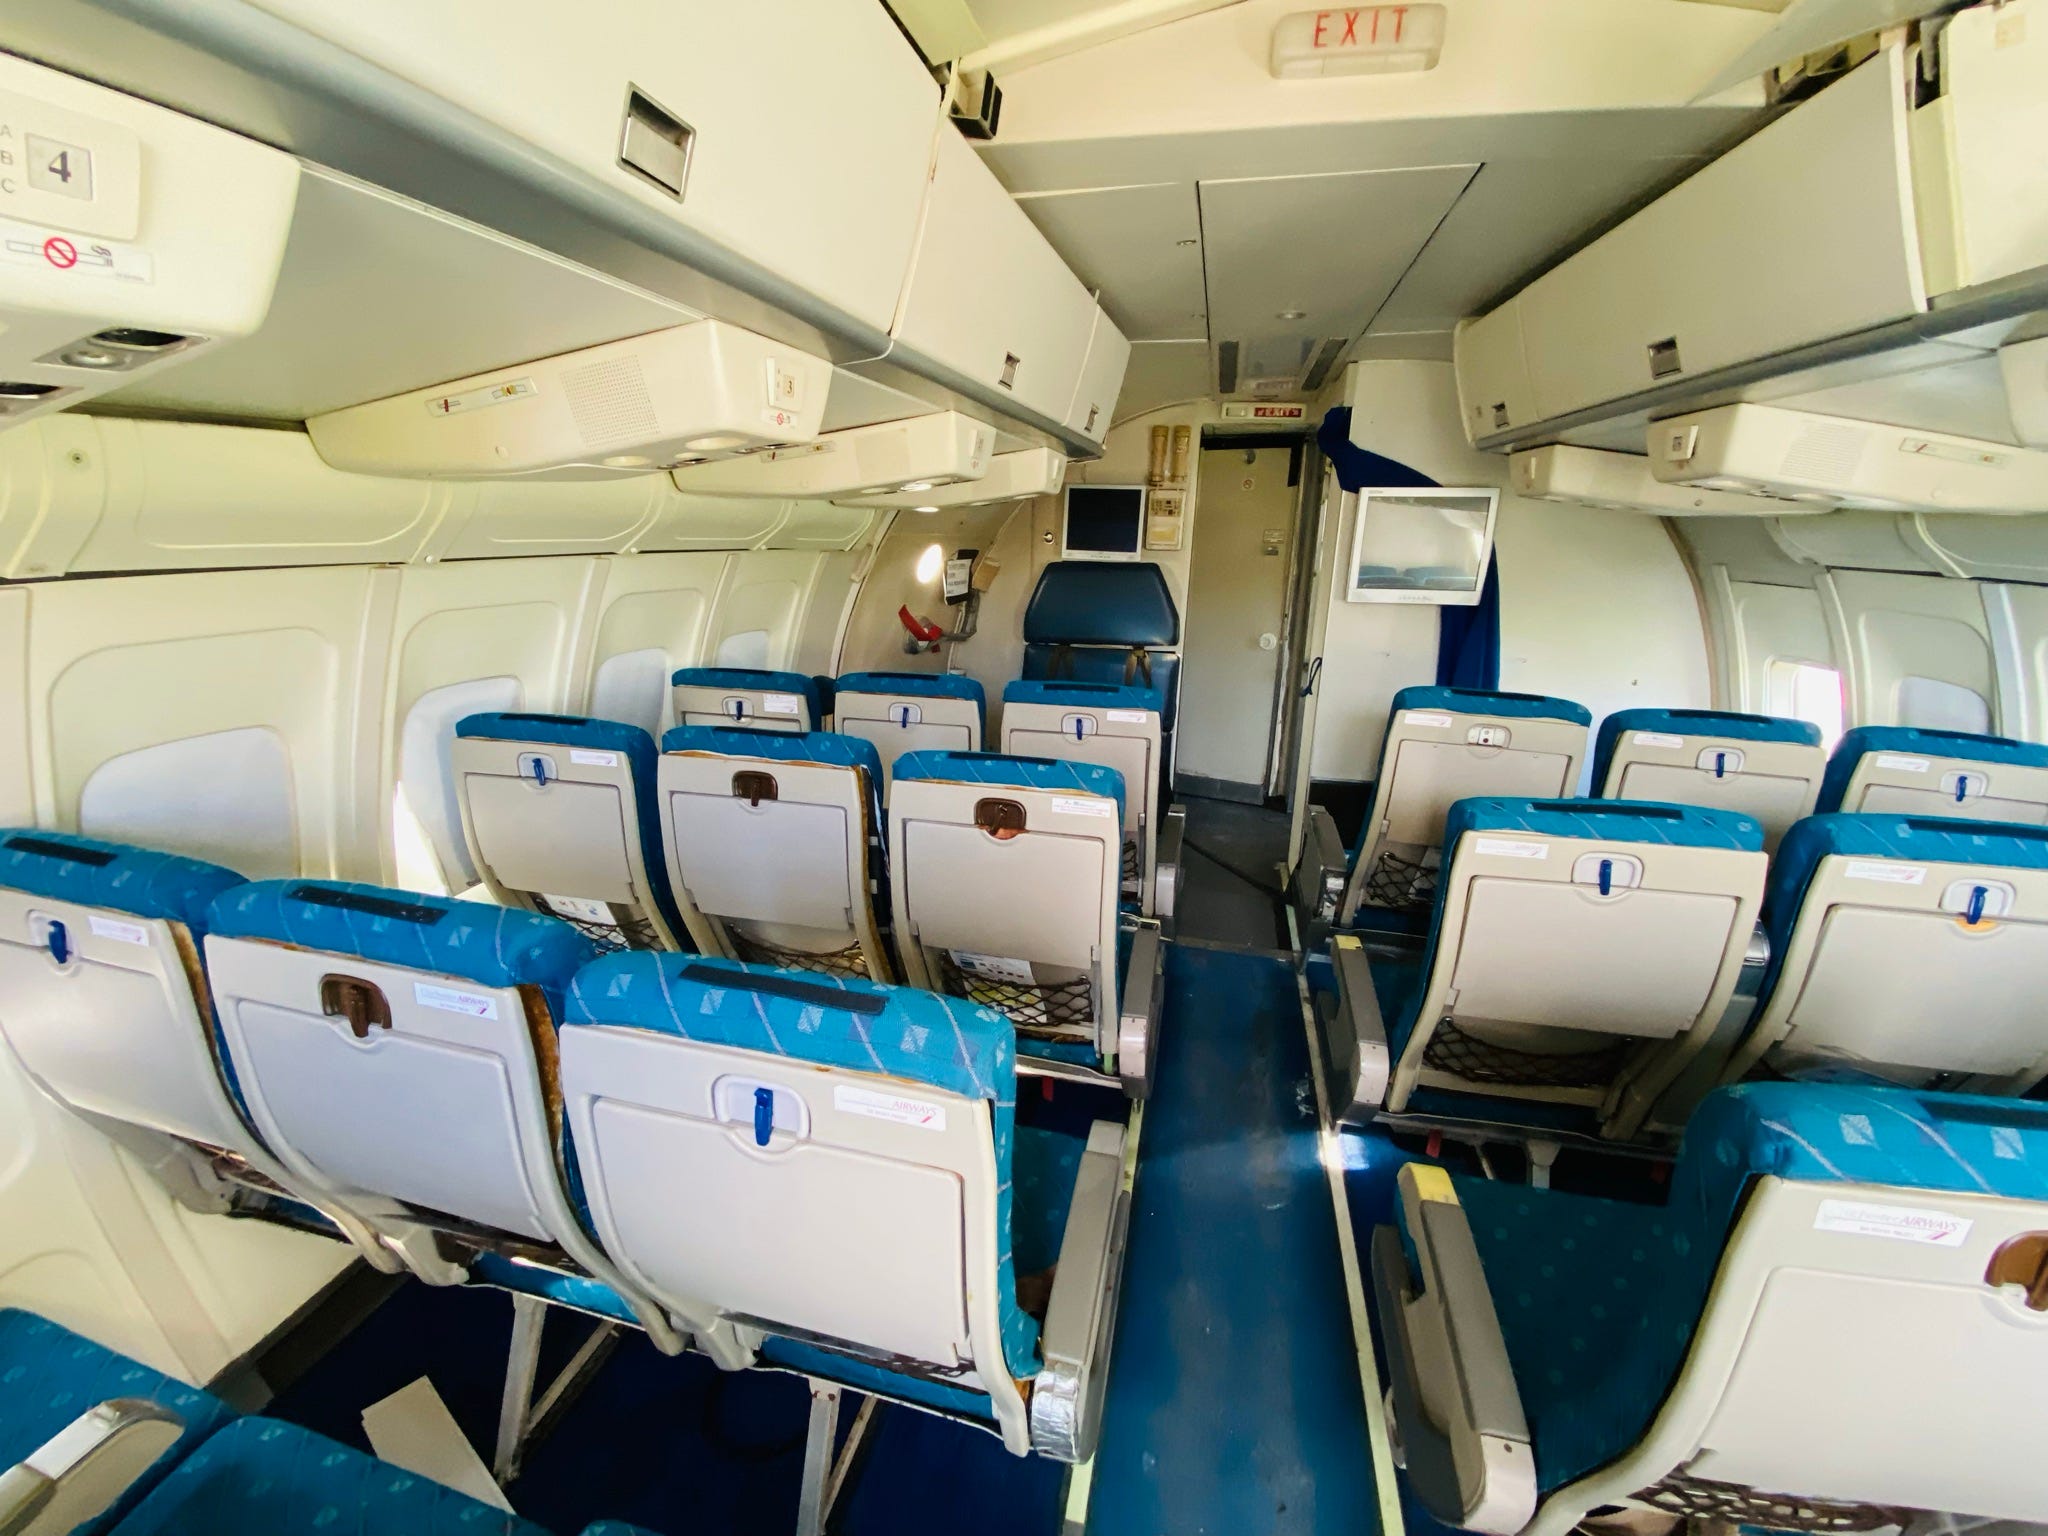 Bild von Sitzen im Flugzeug vor dem Umbau.